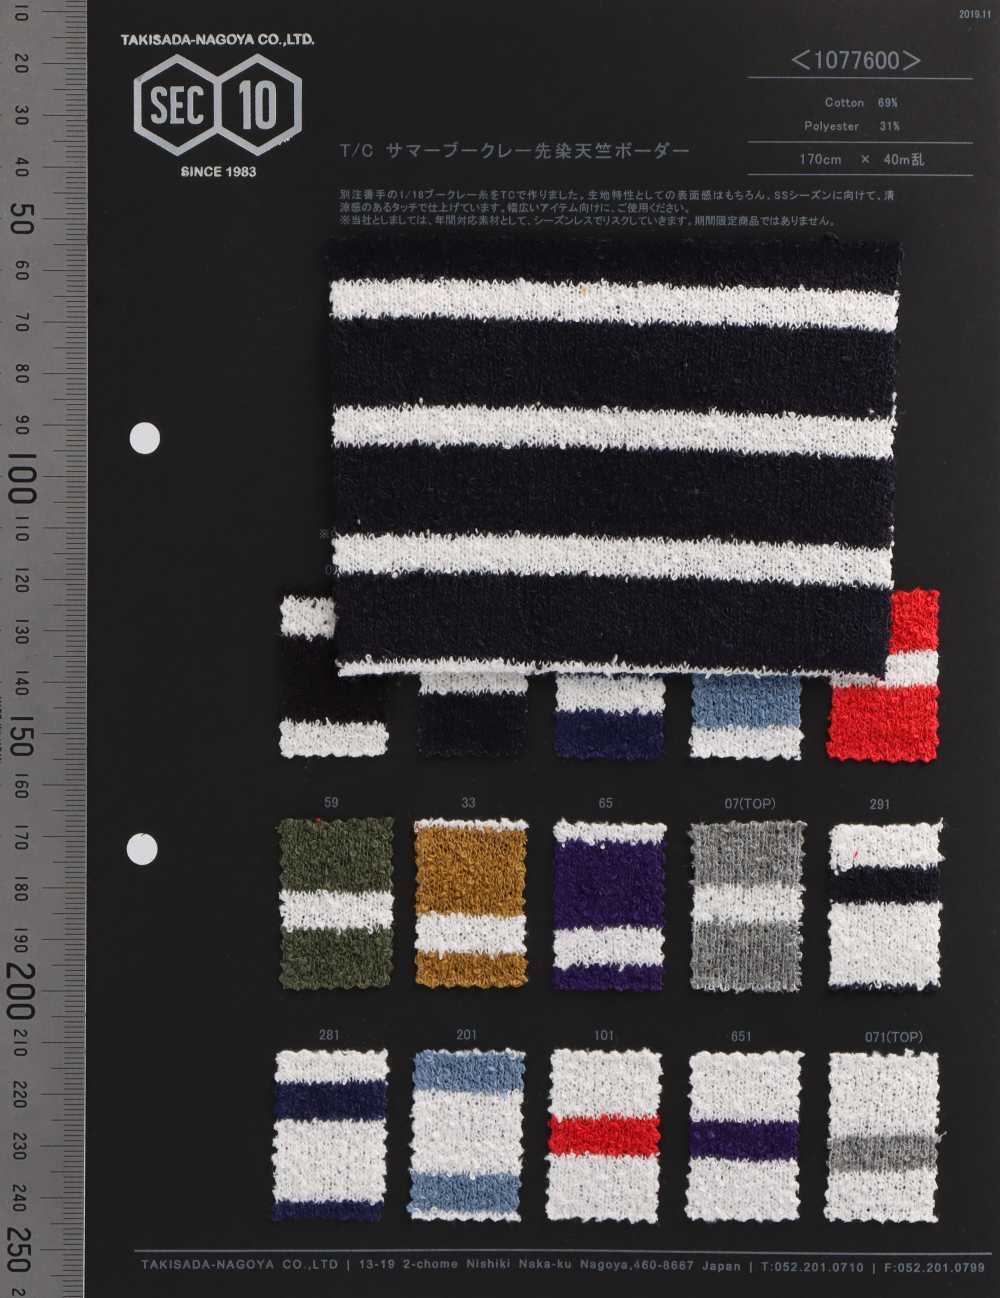 1077600 TC Boucle Yarn Dyed Cotton Jersey Horizontal Stripes[Textile / Fabric] Takisada Nagoya